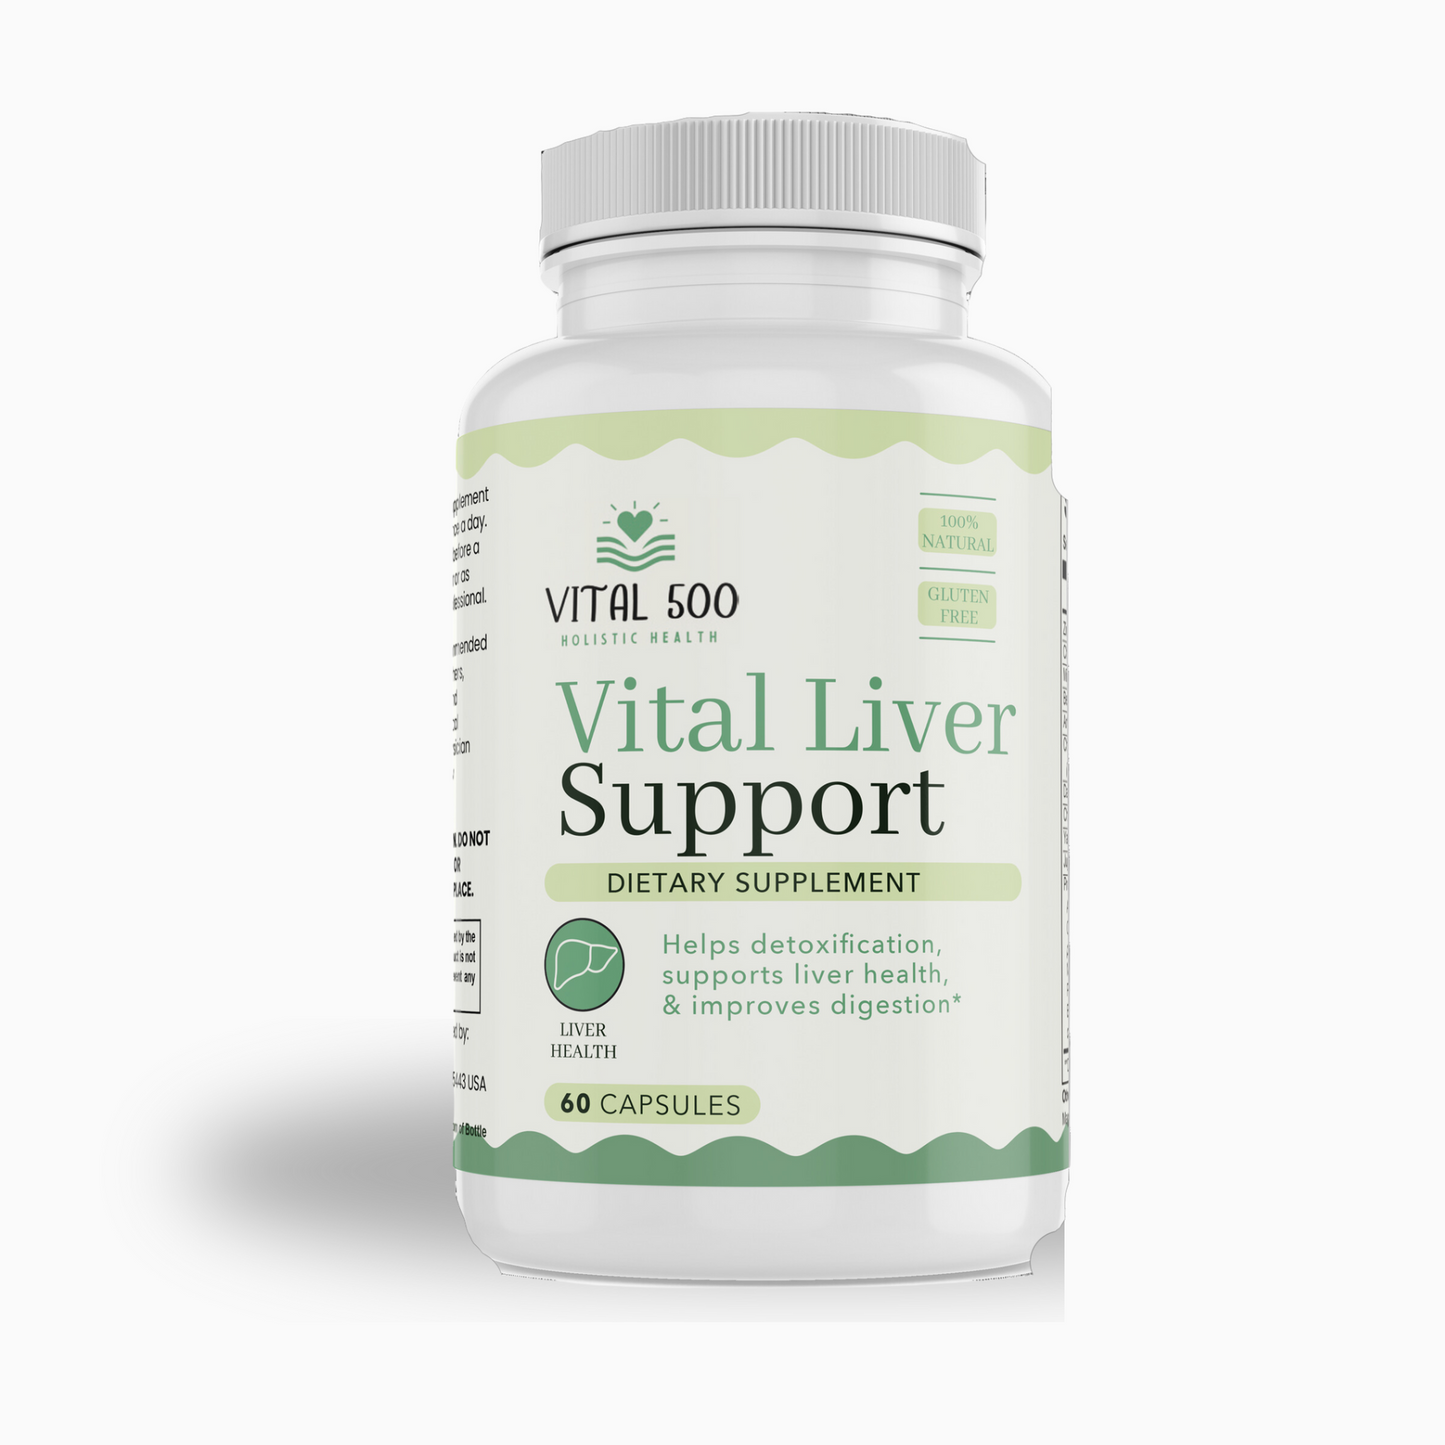 Vital Liver Support